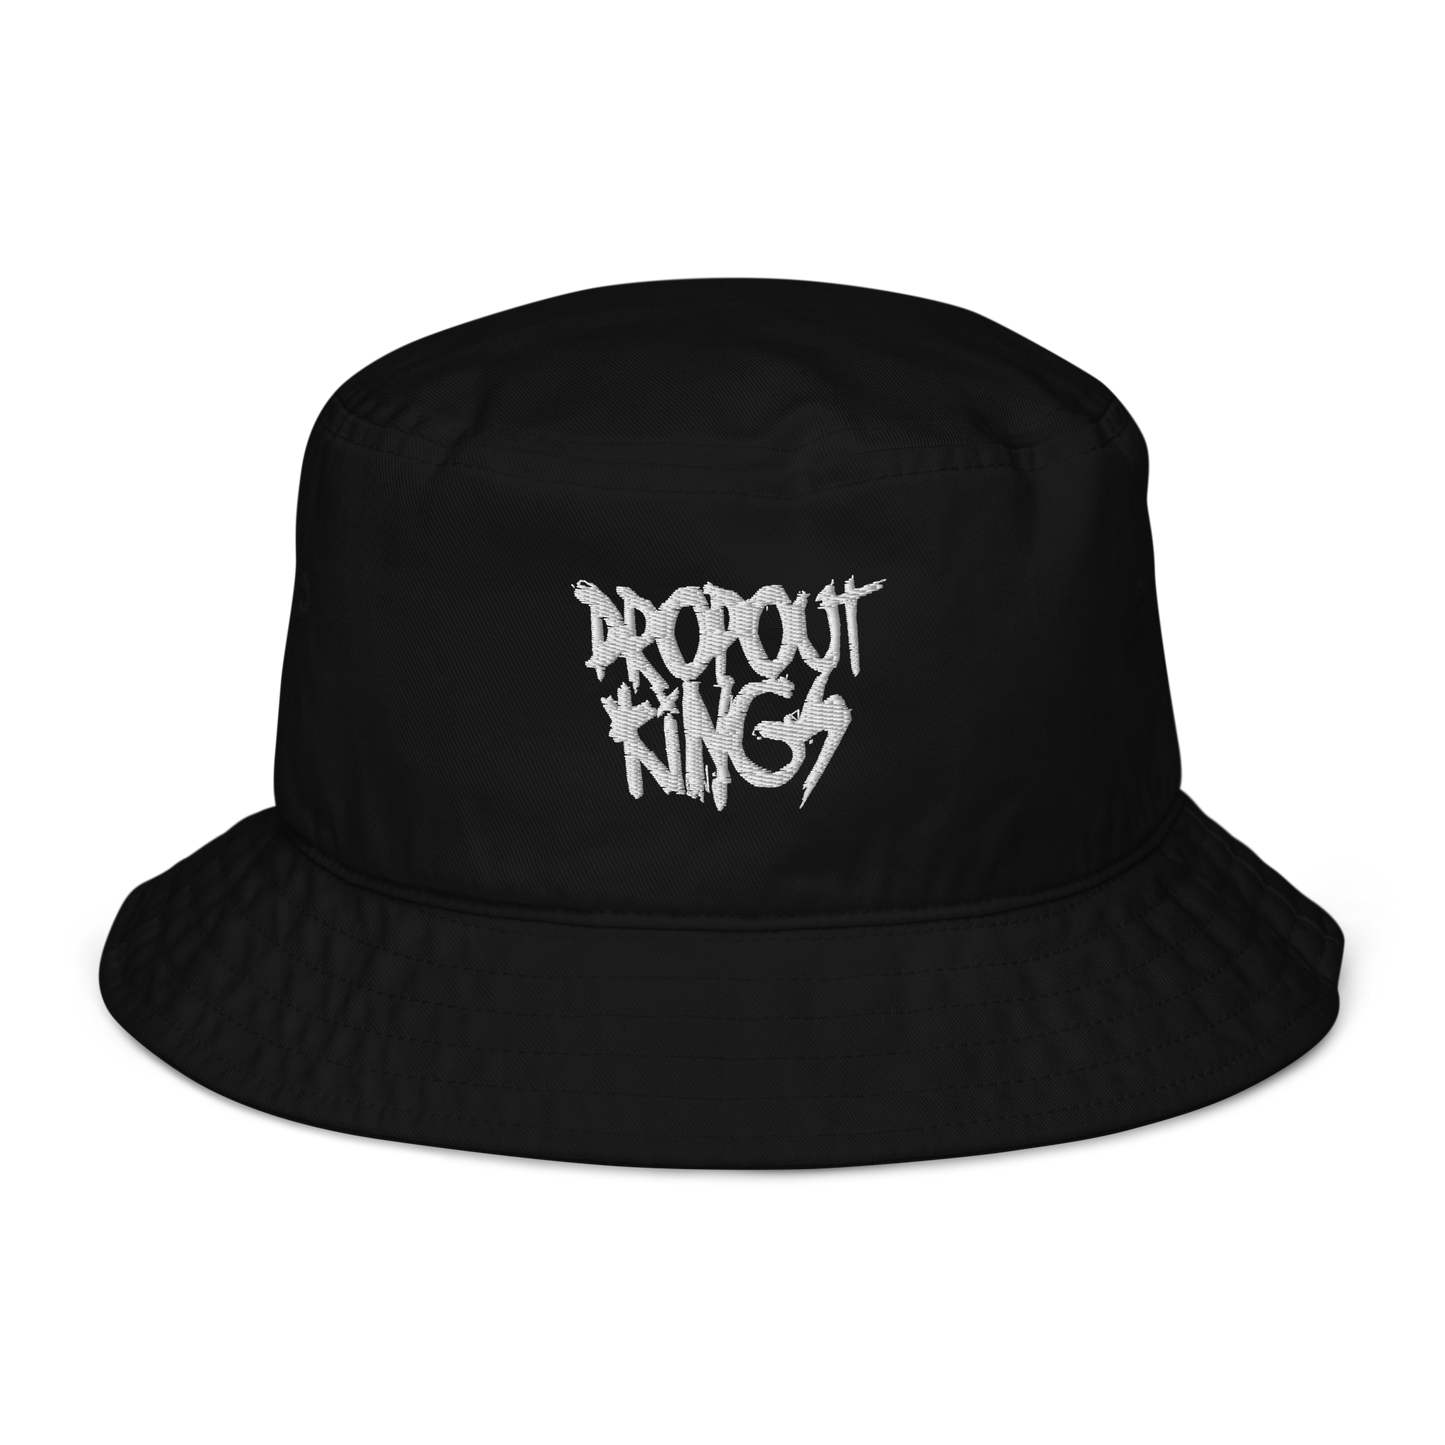 Dropout Kings Bucket Hat